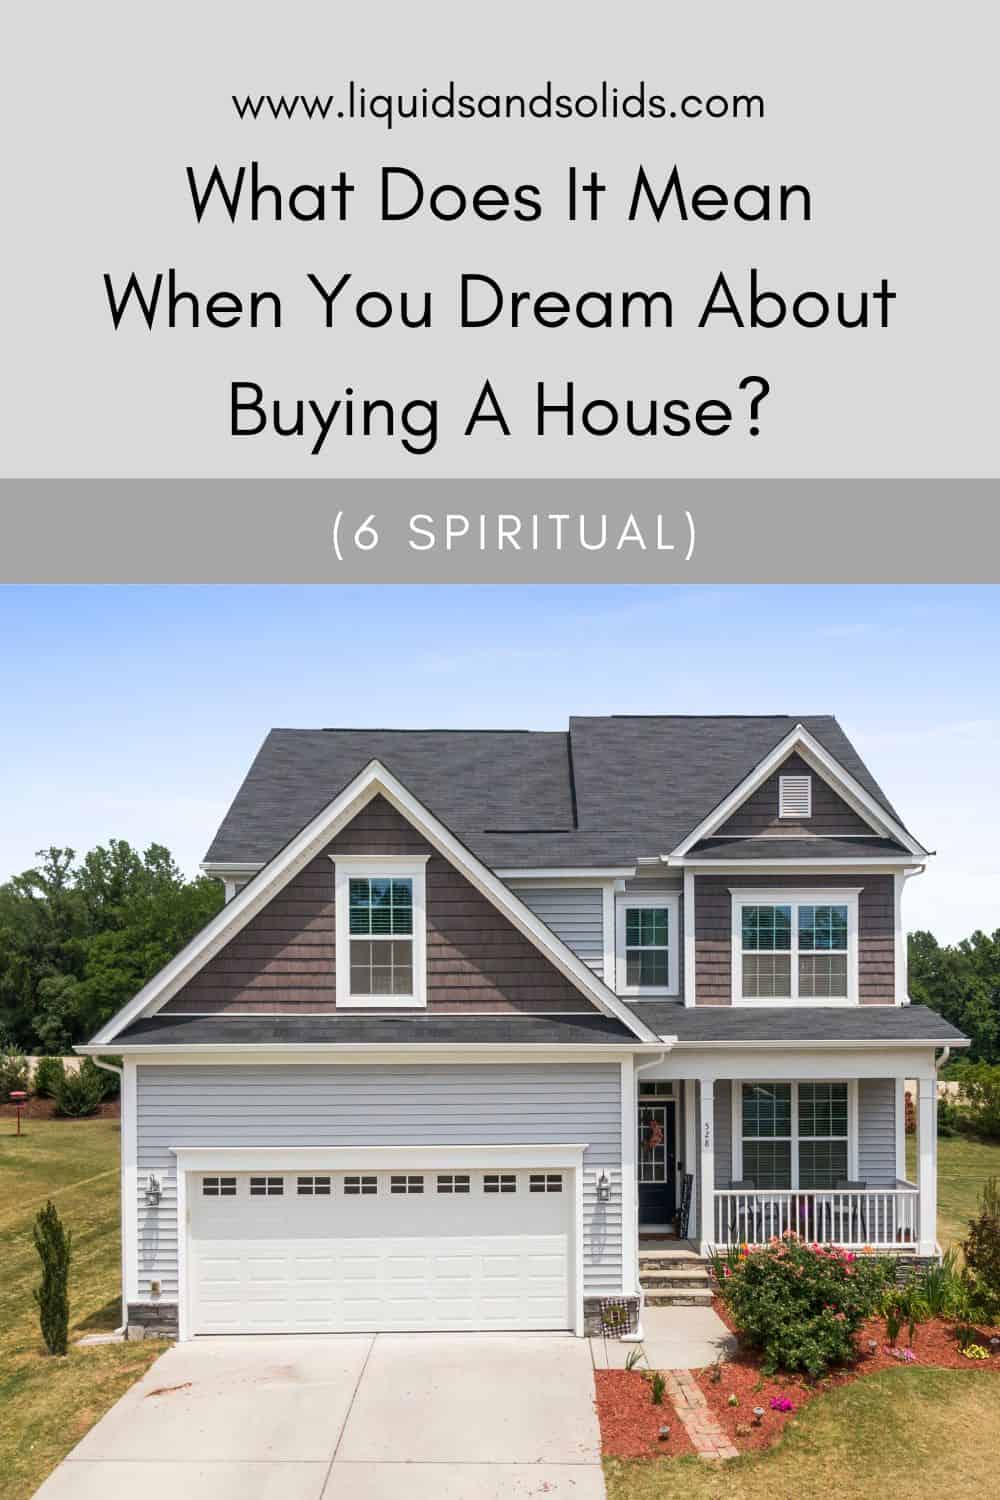  Drøm om at købe et hus? (6 spirituelle betydninger)